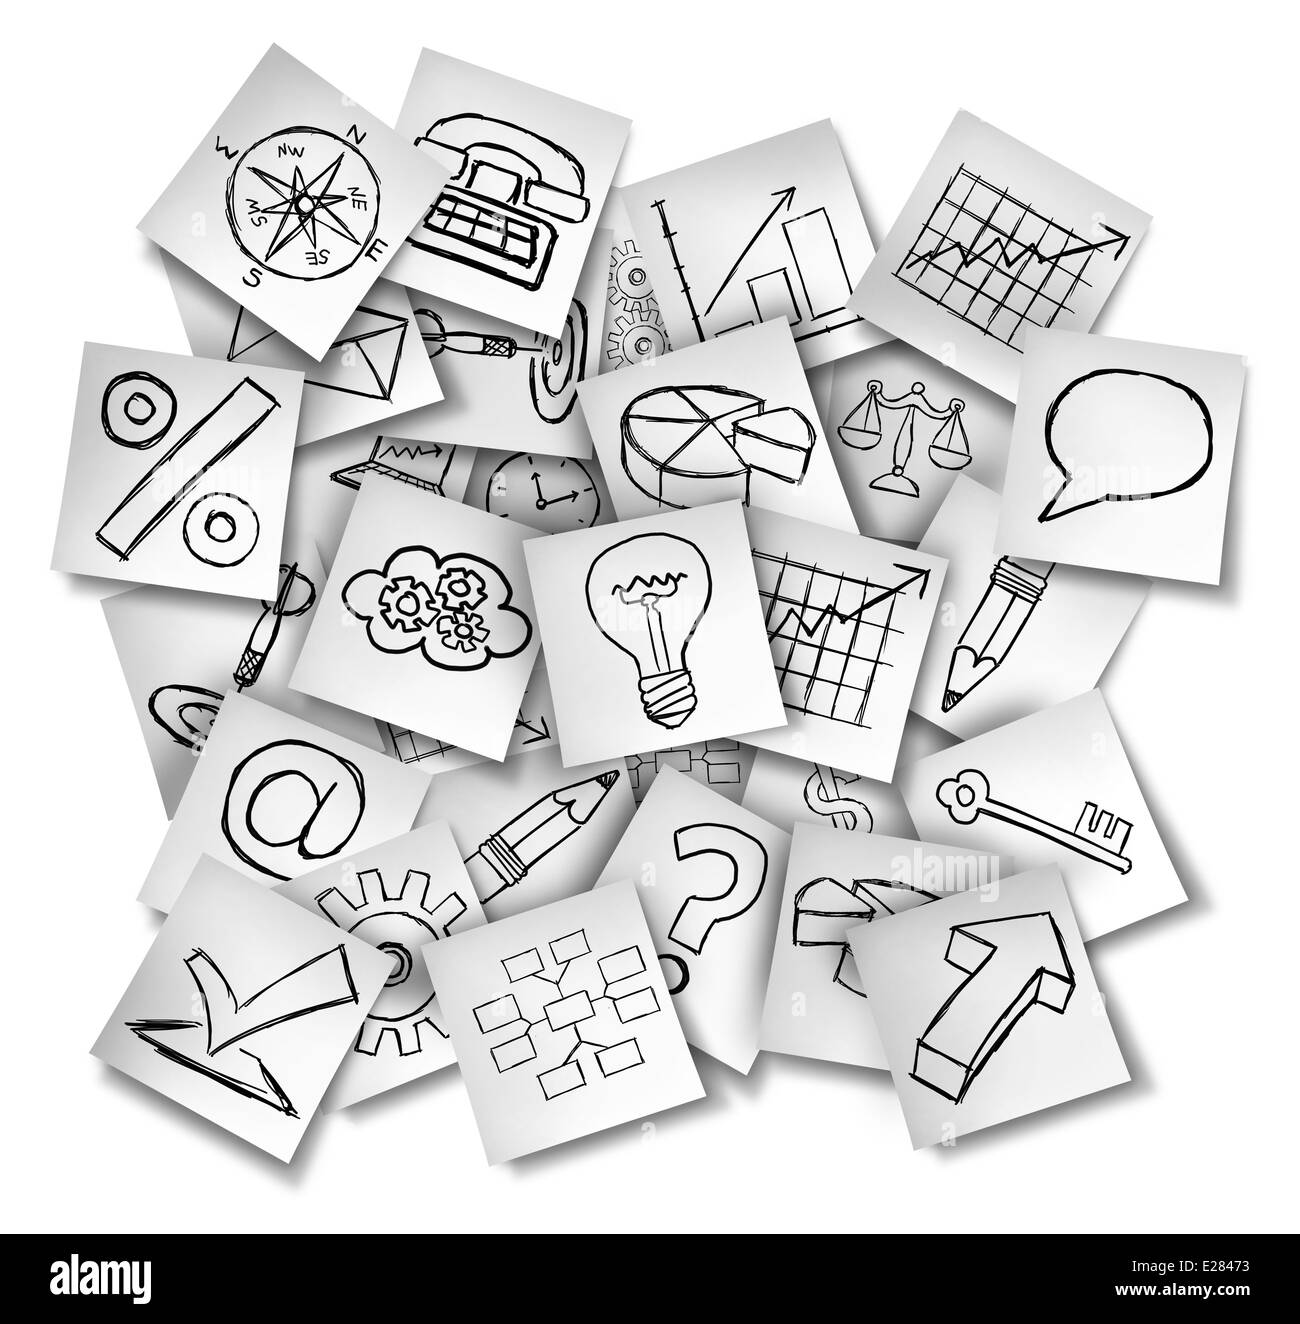 Les icônes de bureau note comme un concept d'information d'affaires et les données financières en tant que groupe de livres blancs avec des dessins de finances Banque D'Images